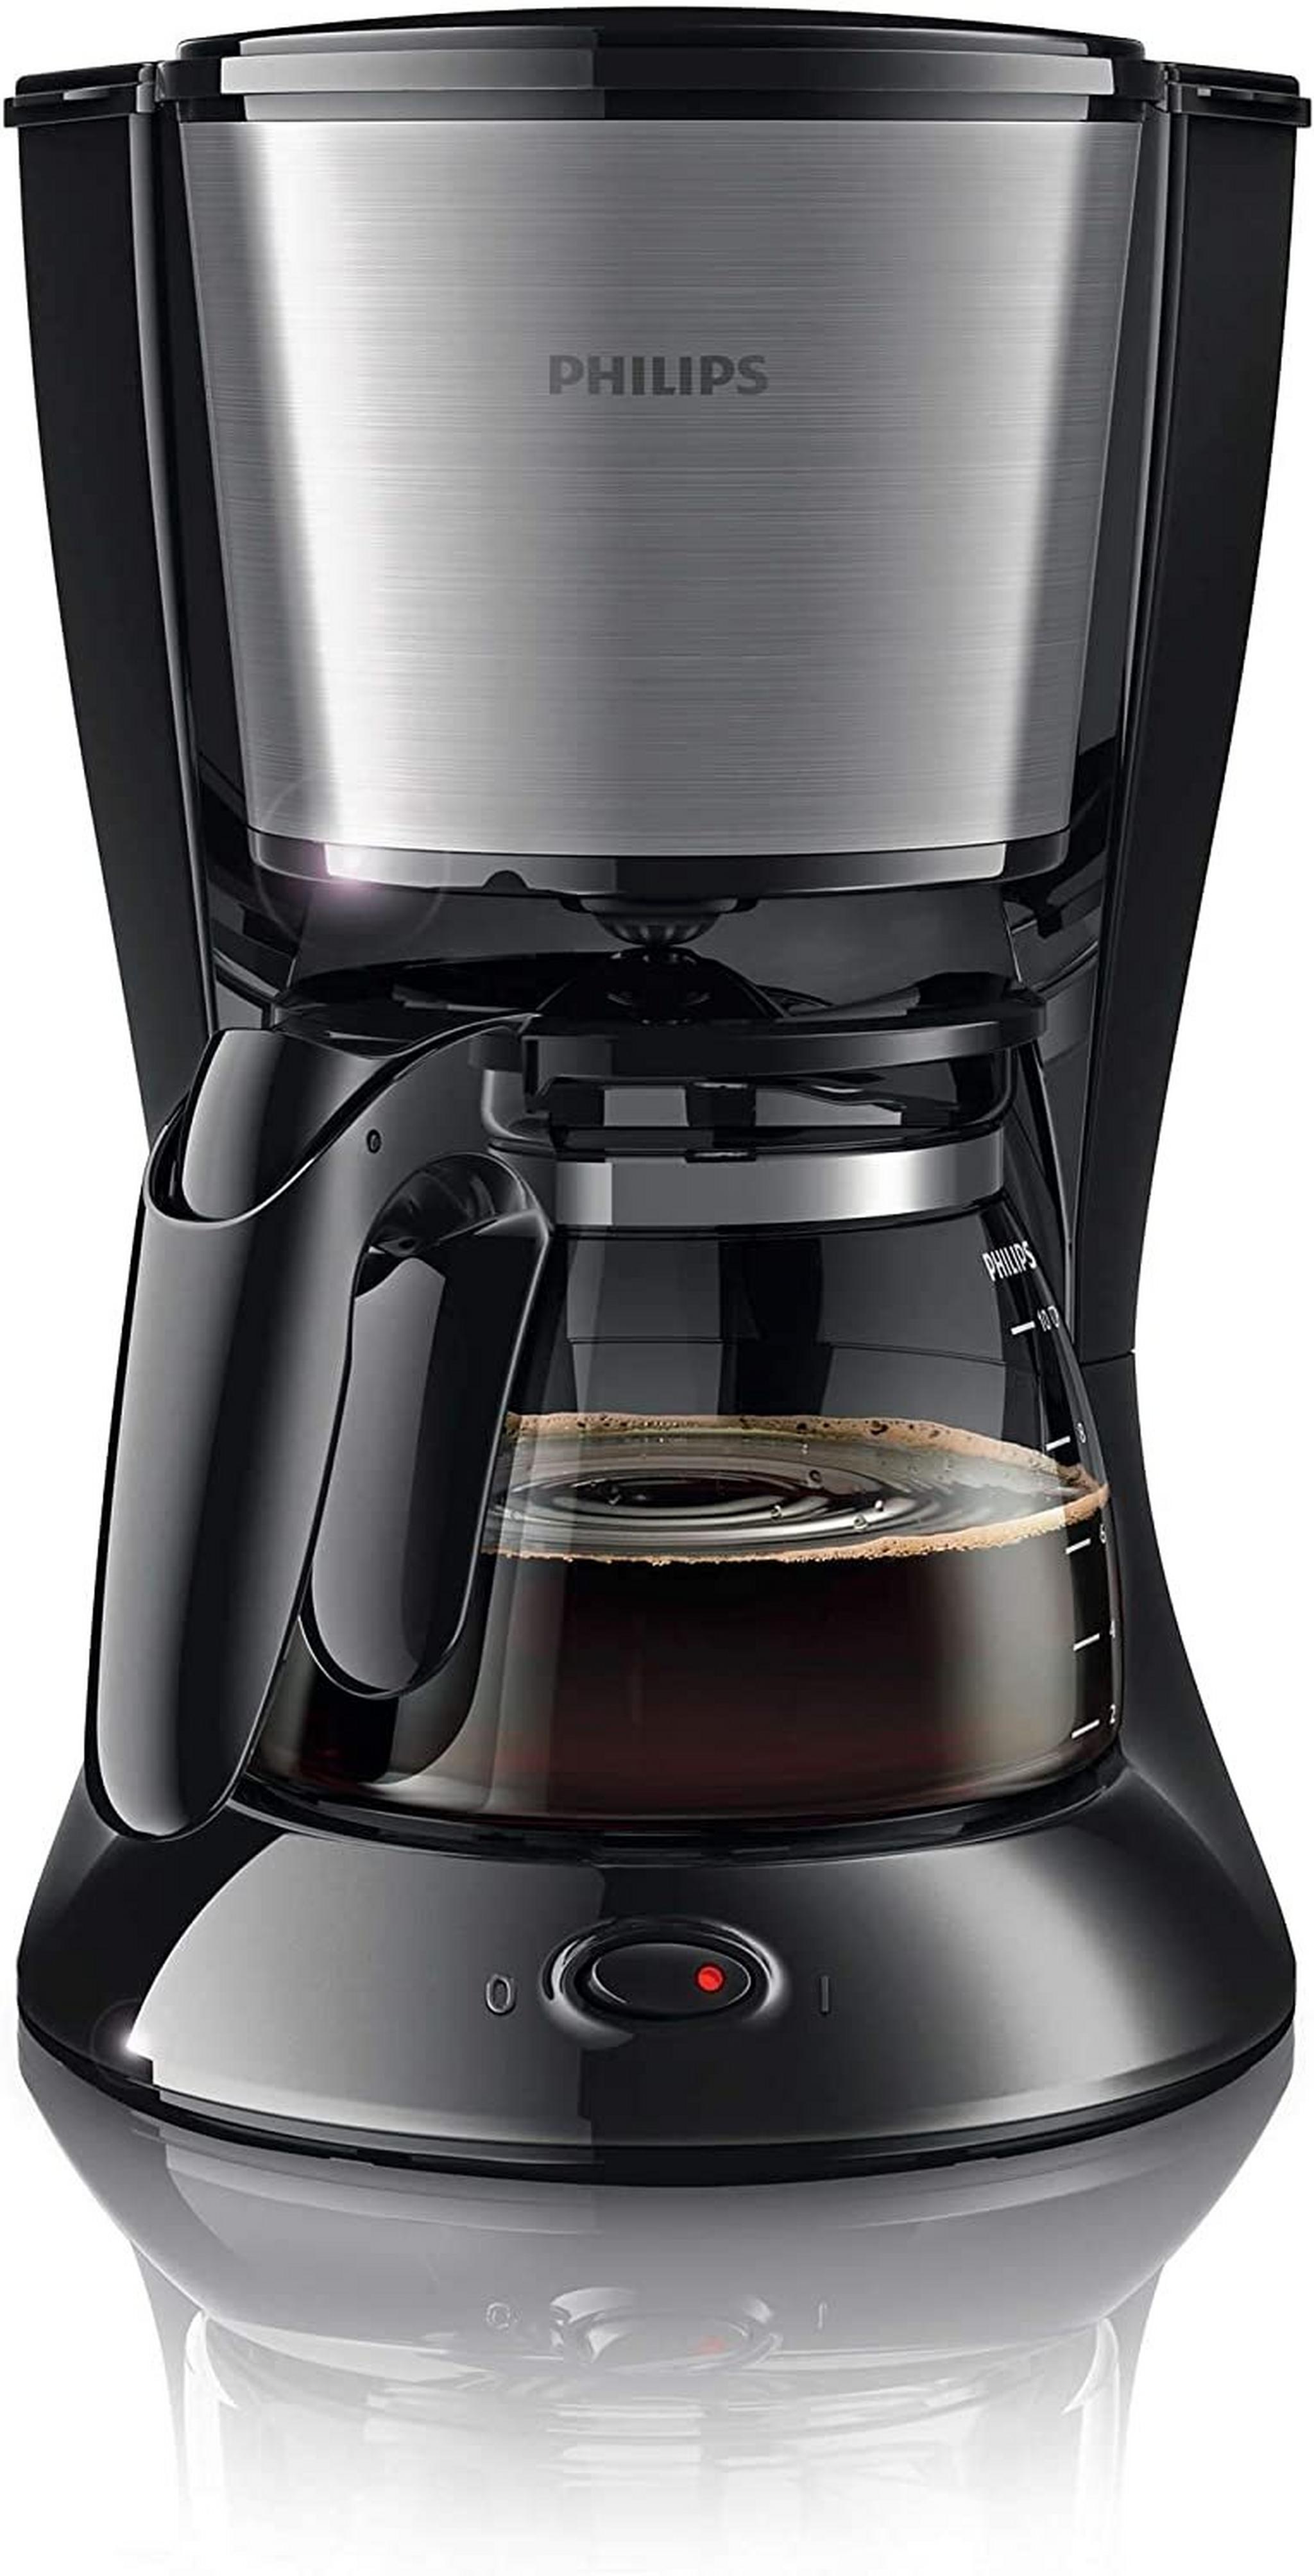 Philips Drip Coffee Maker, 1000W, 1.2L, HD7462/20 - Black